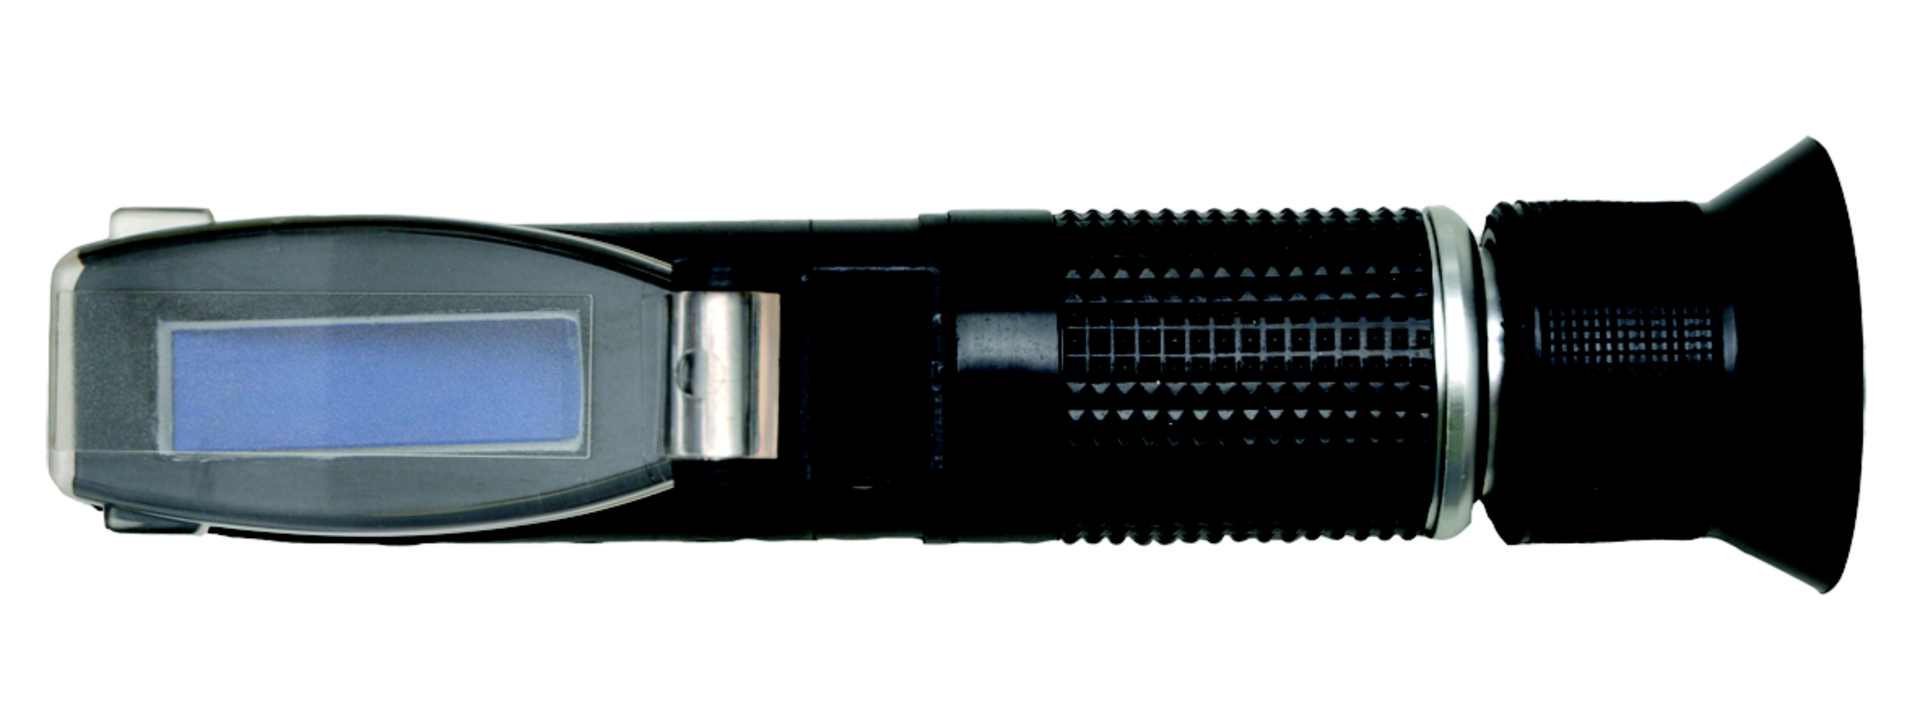 Handrefraktometer MHRB 18 ATC 0-18% Brix mit Schutztasche und Pipette